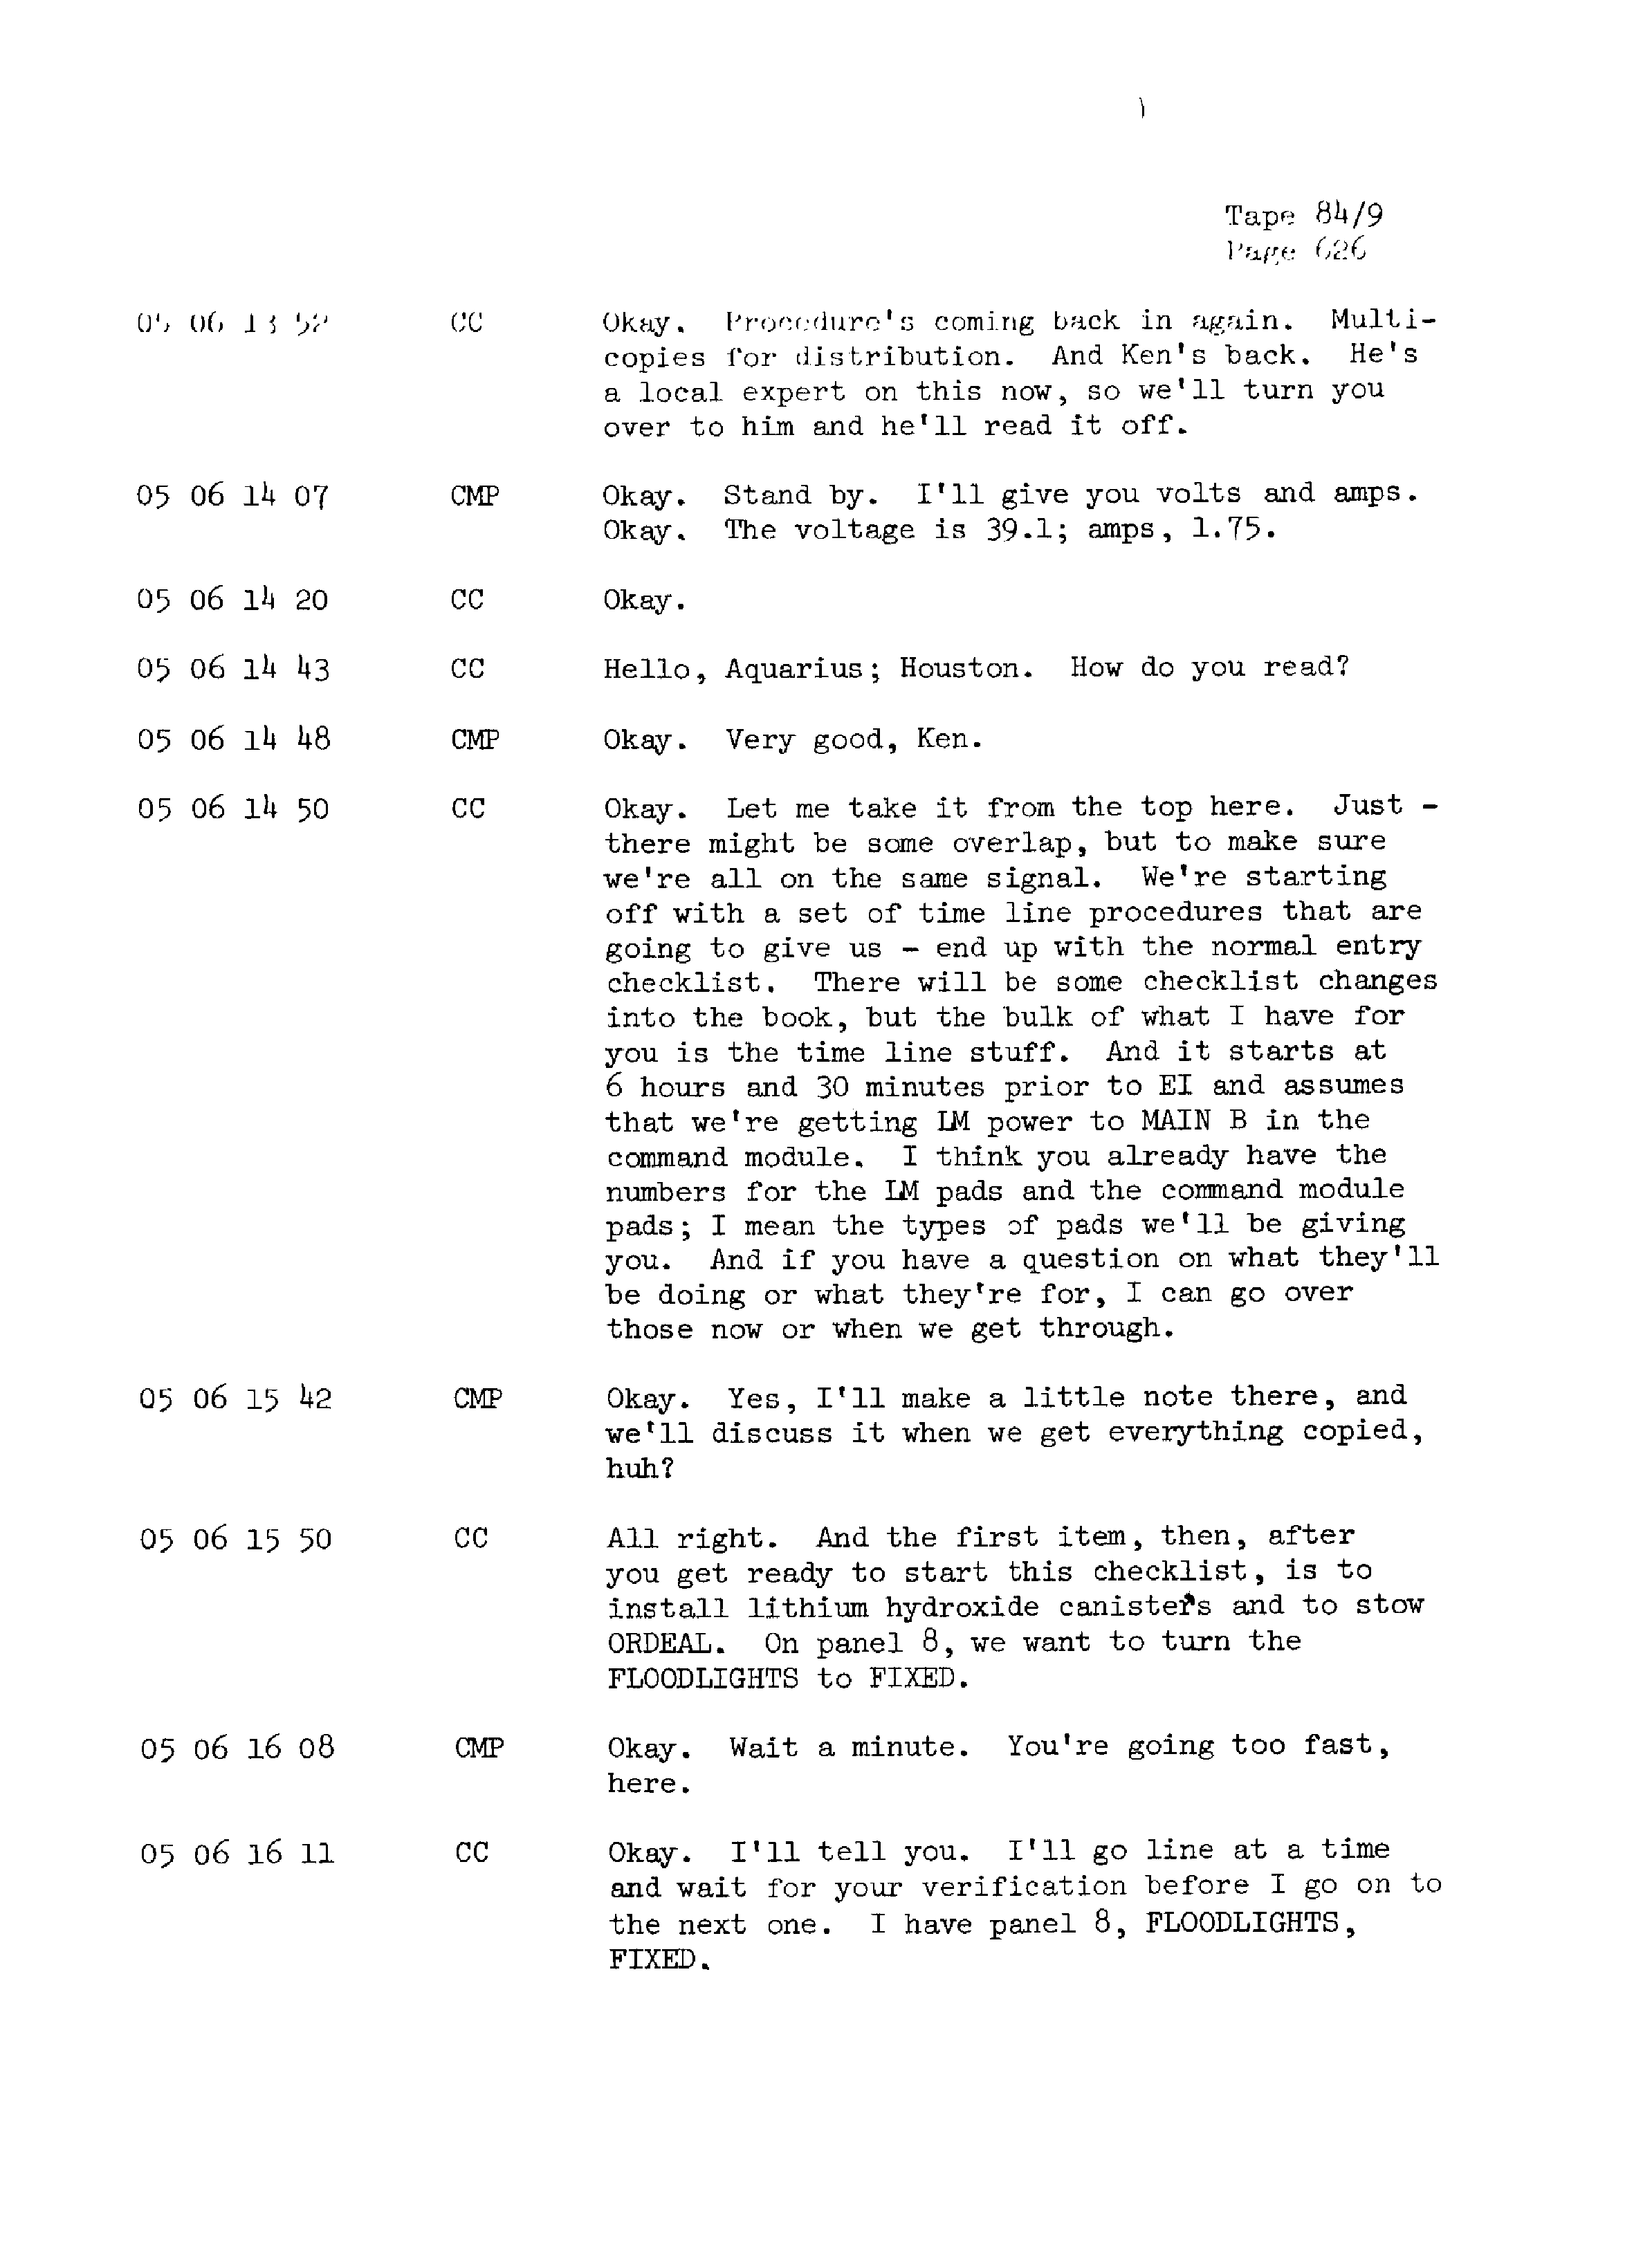 Page 633 of Apollo 13’s original transcript